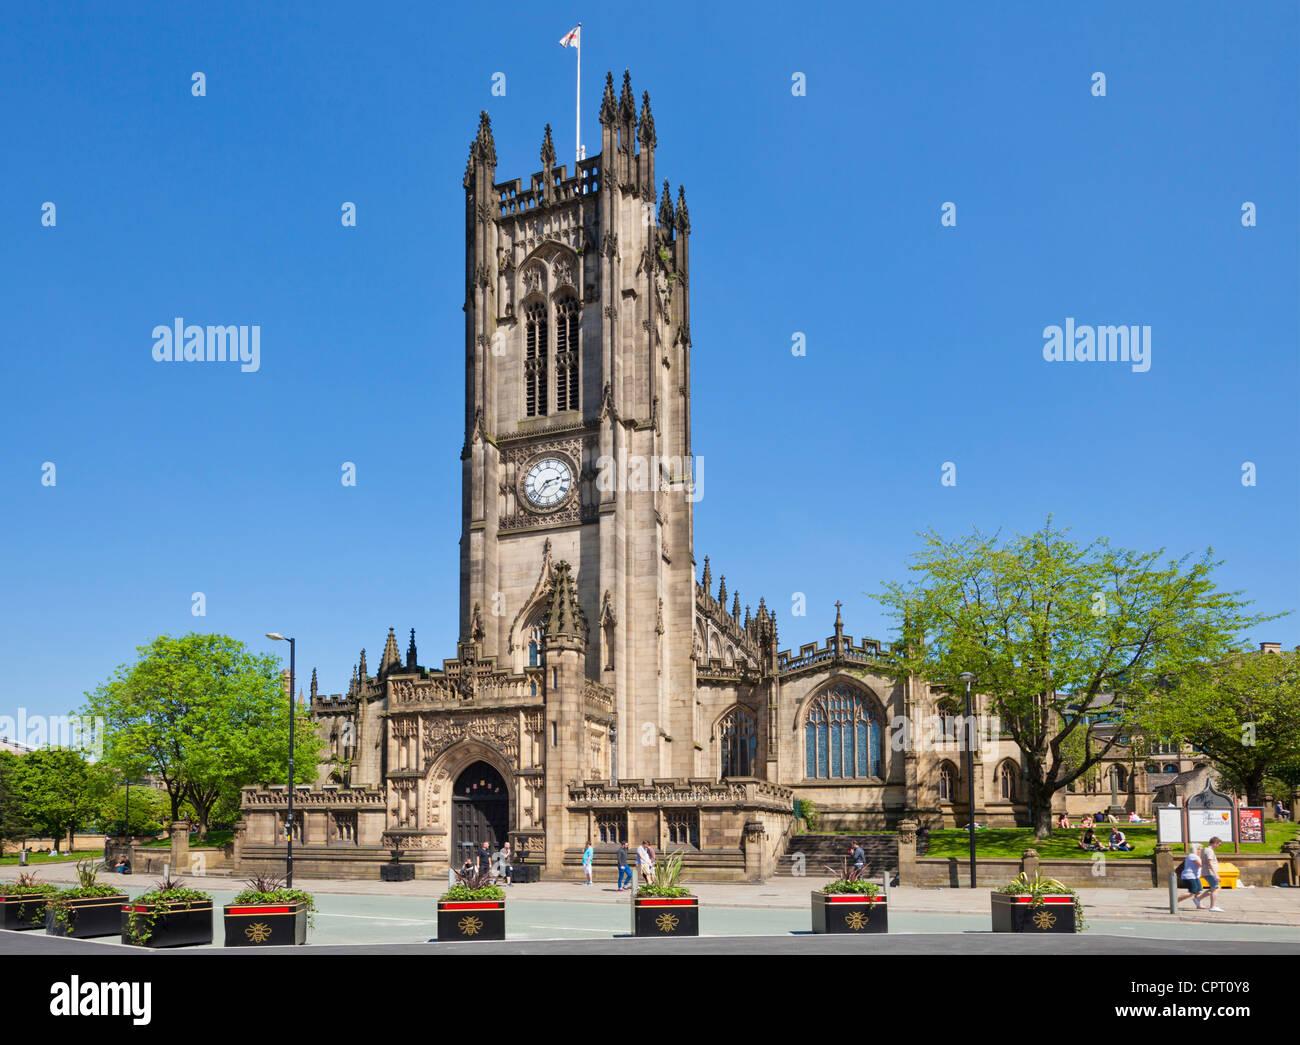 La Cathédrale de Manchester d'une église médiévale centre de Manchester England UK GB EU Europe Banque D'Images